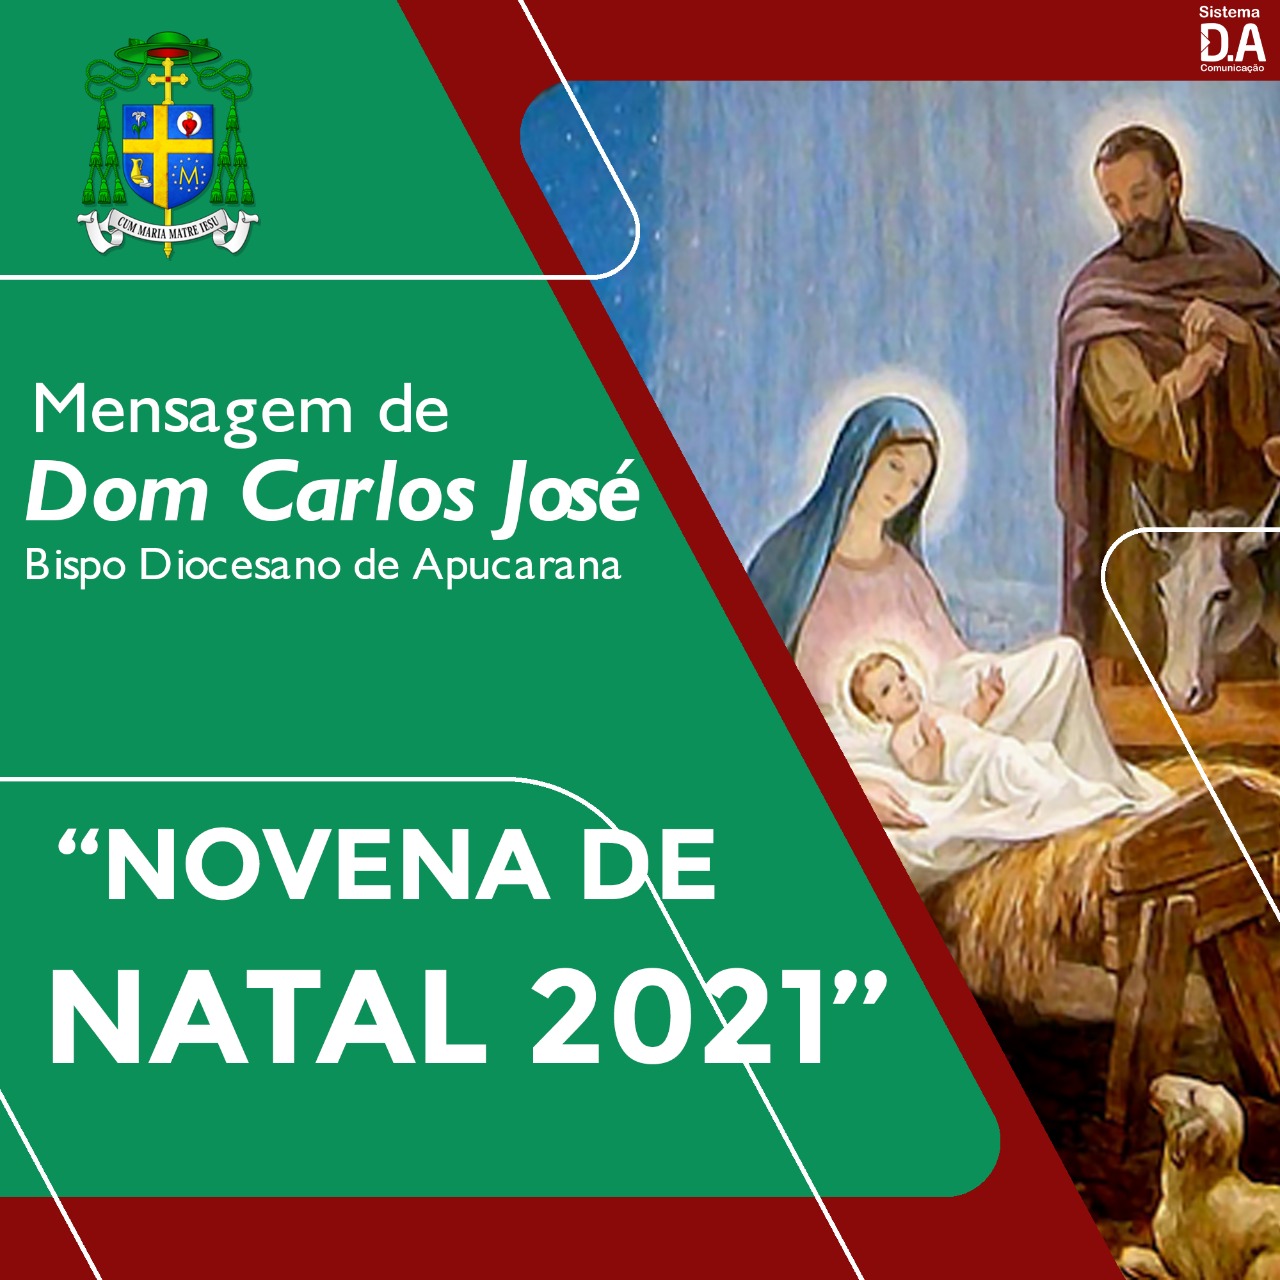 NOVENA DE NATAL 2021  Online